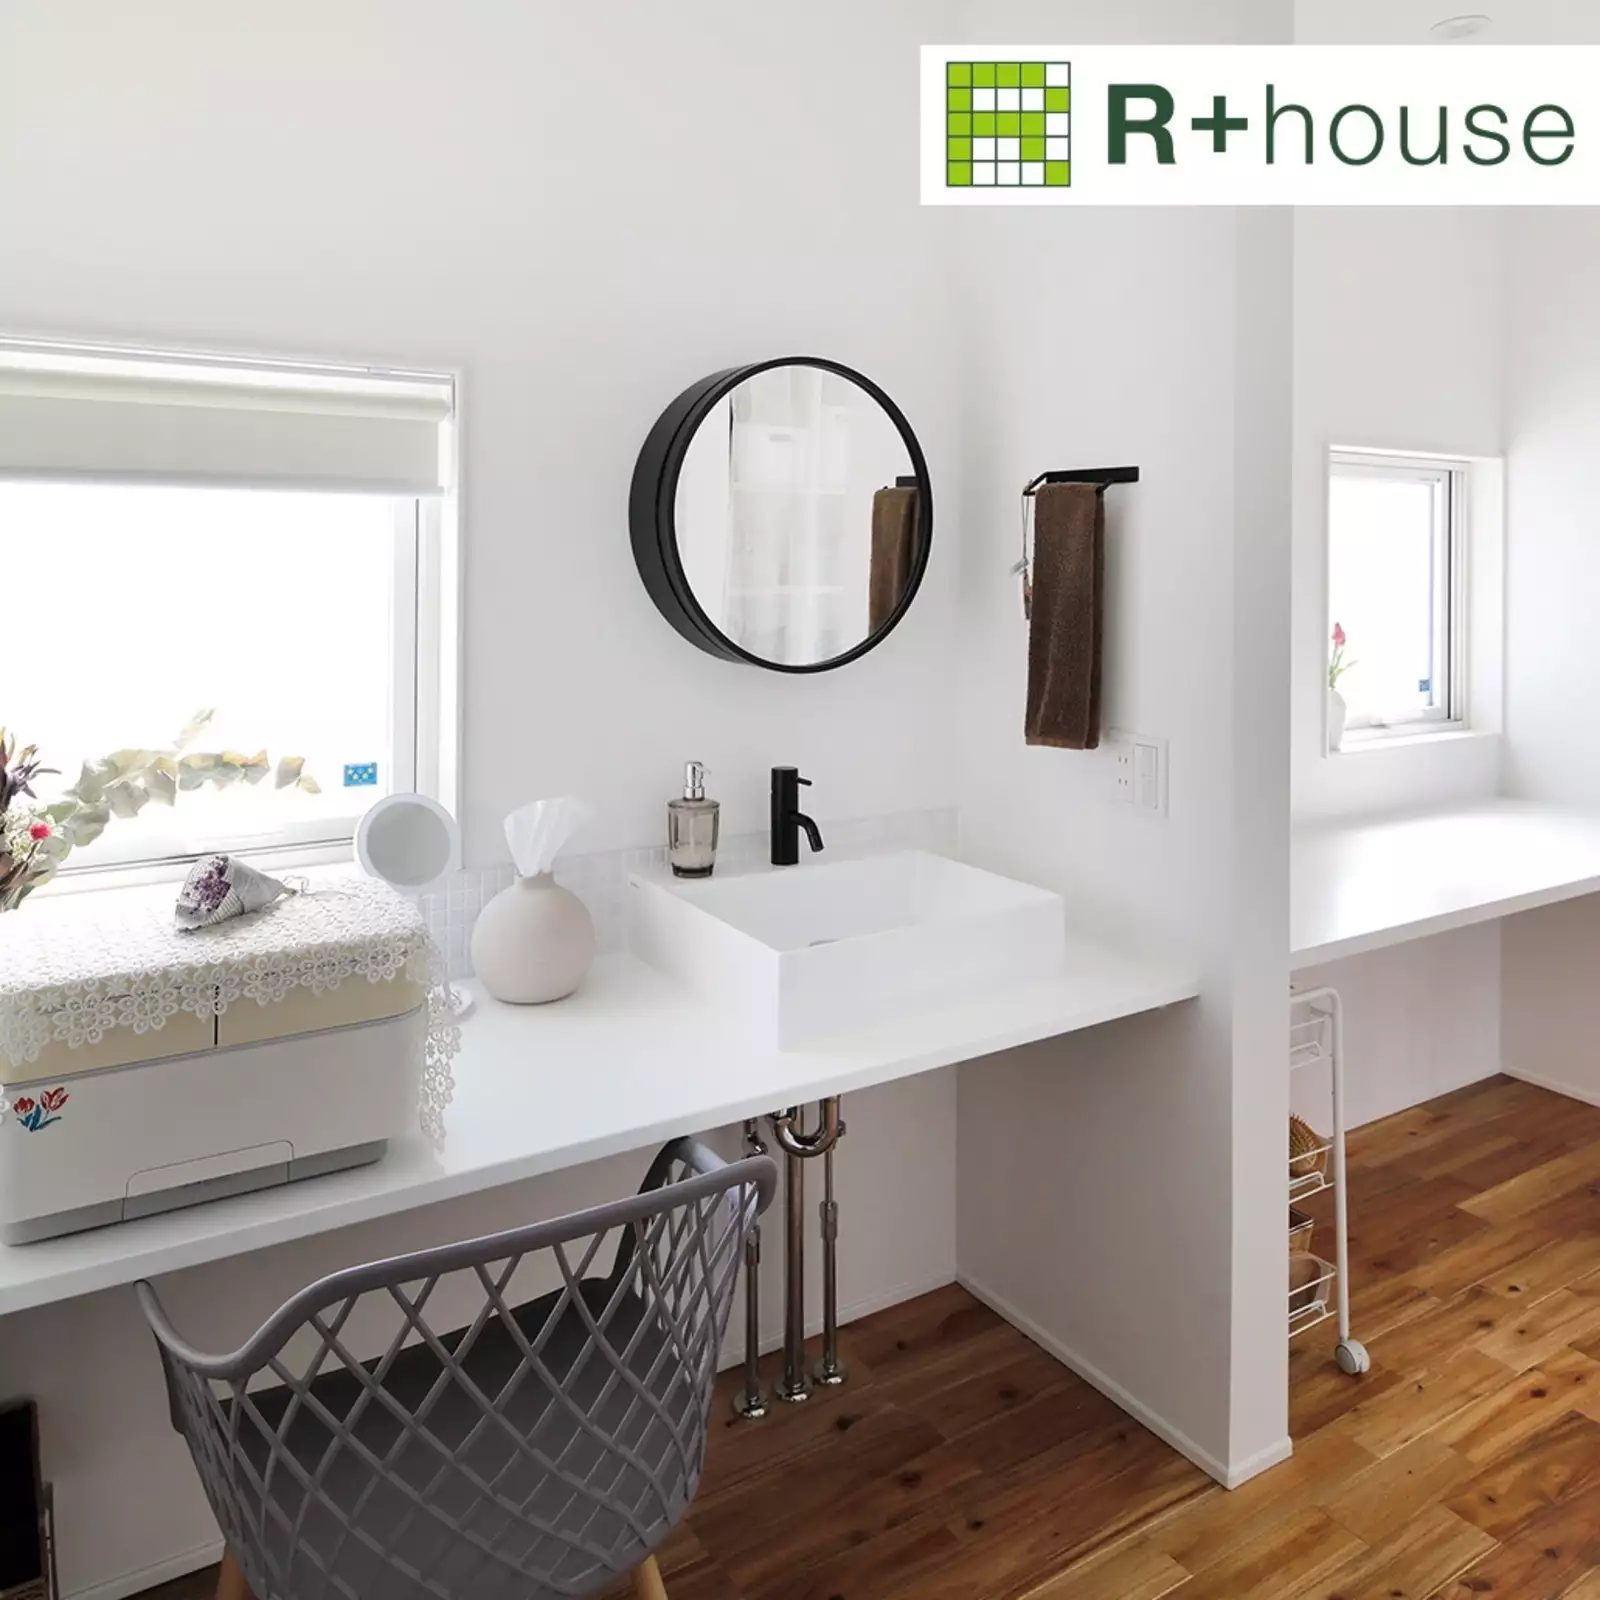 R+houseの物件のワークスペース横の洗面台の写真です。カウンターにつけられた白が基調の洗面台、壁にかかる黒い丸鏡がアクセント